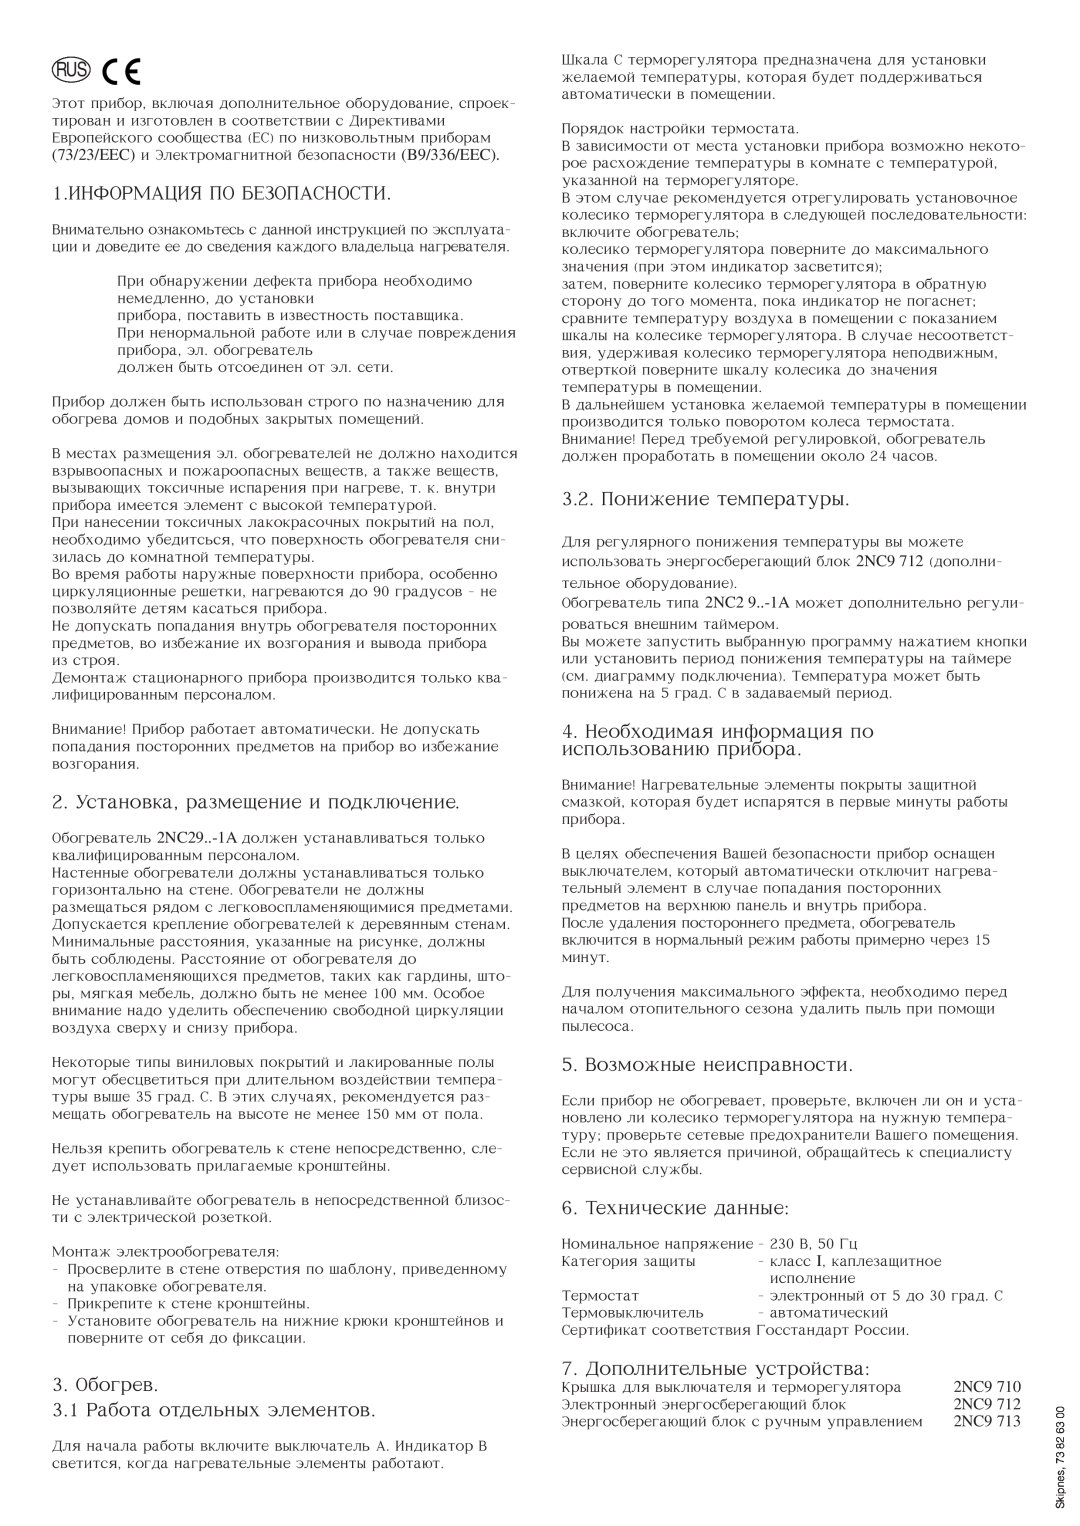 Siemens 576.056A Informaciq Po Bezopasnosti, Ustanovka, razmeenie i podklhenie, Obogrev 3.1 Rabota otdel nyx `lementov 